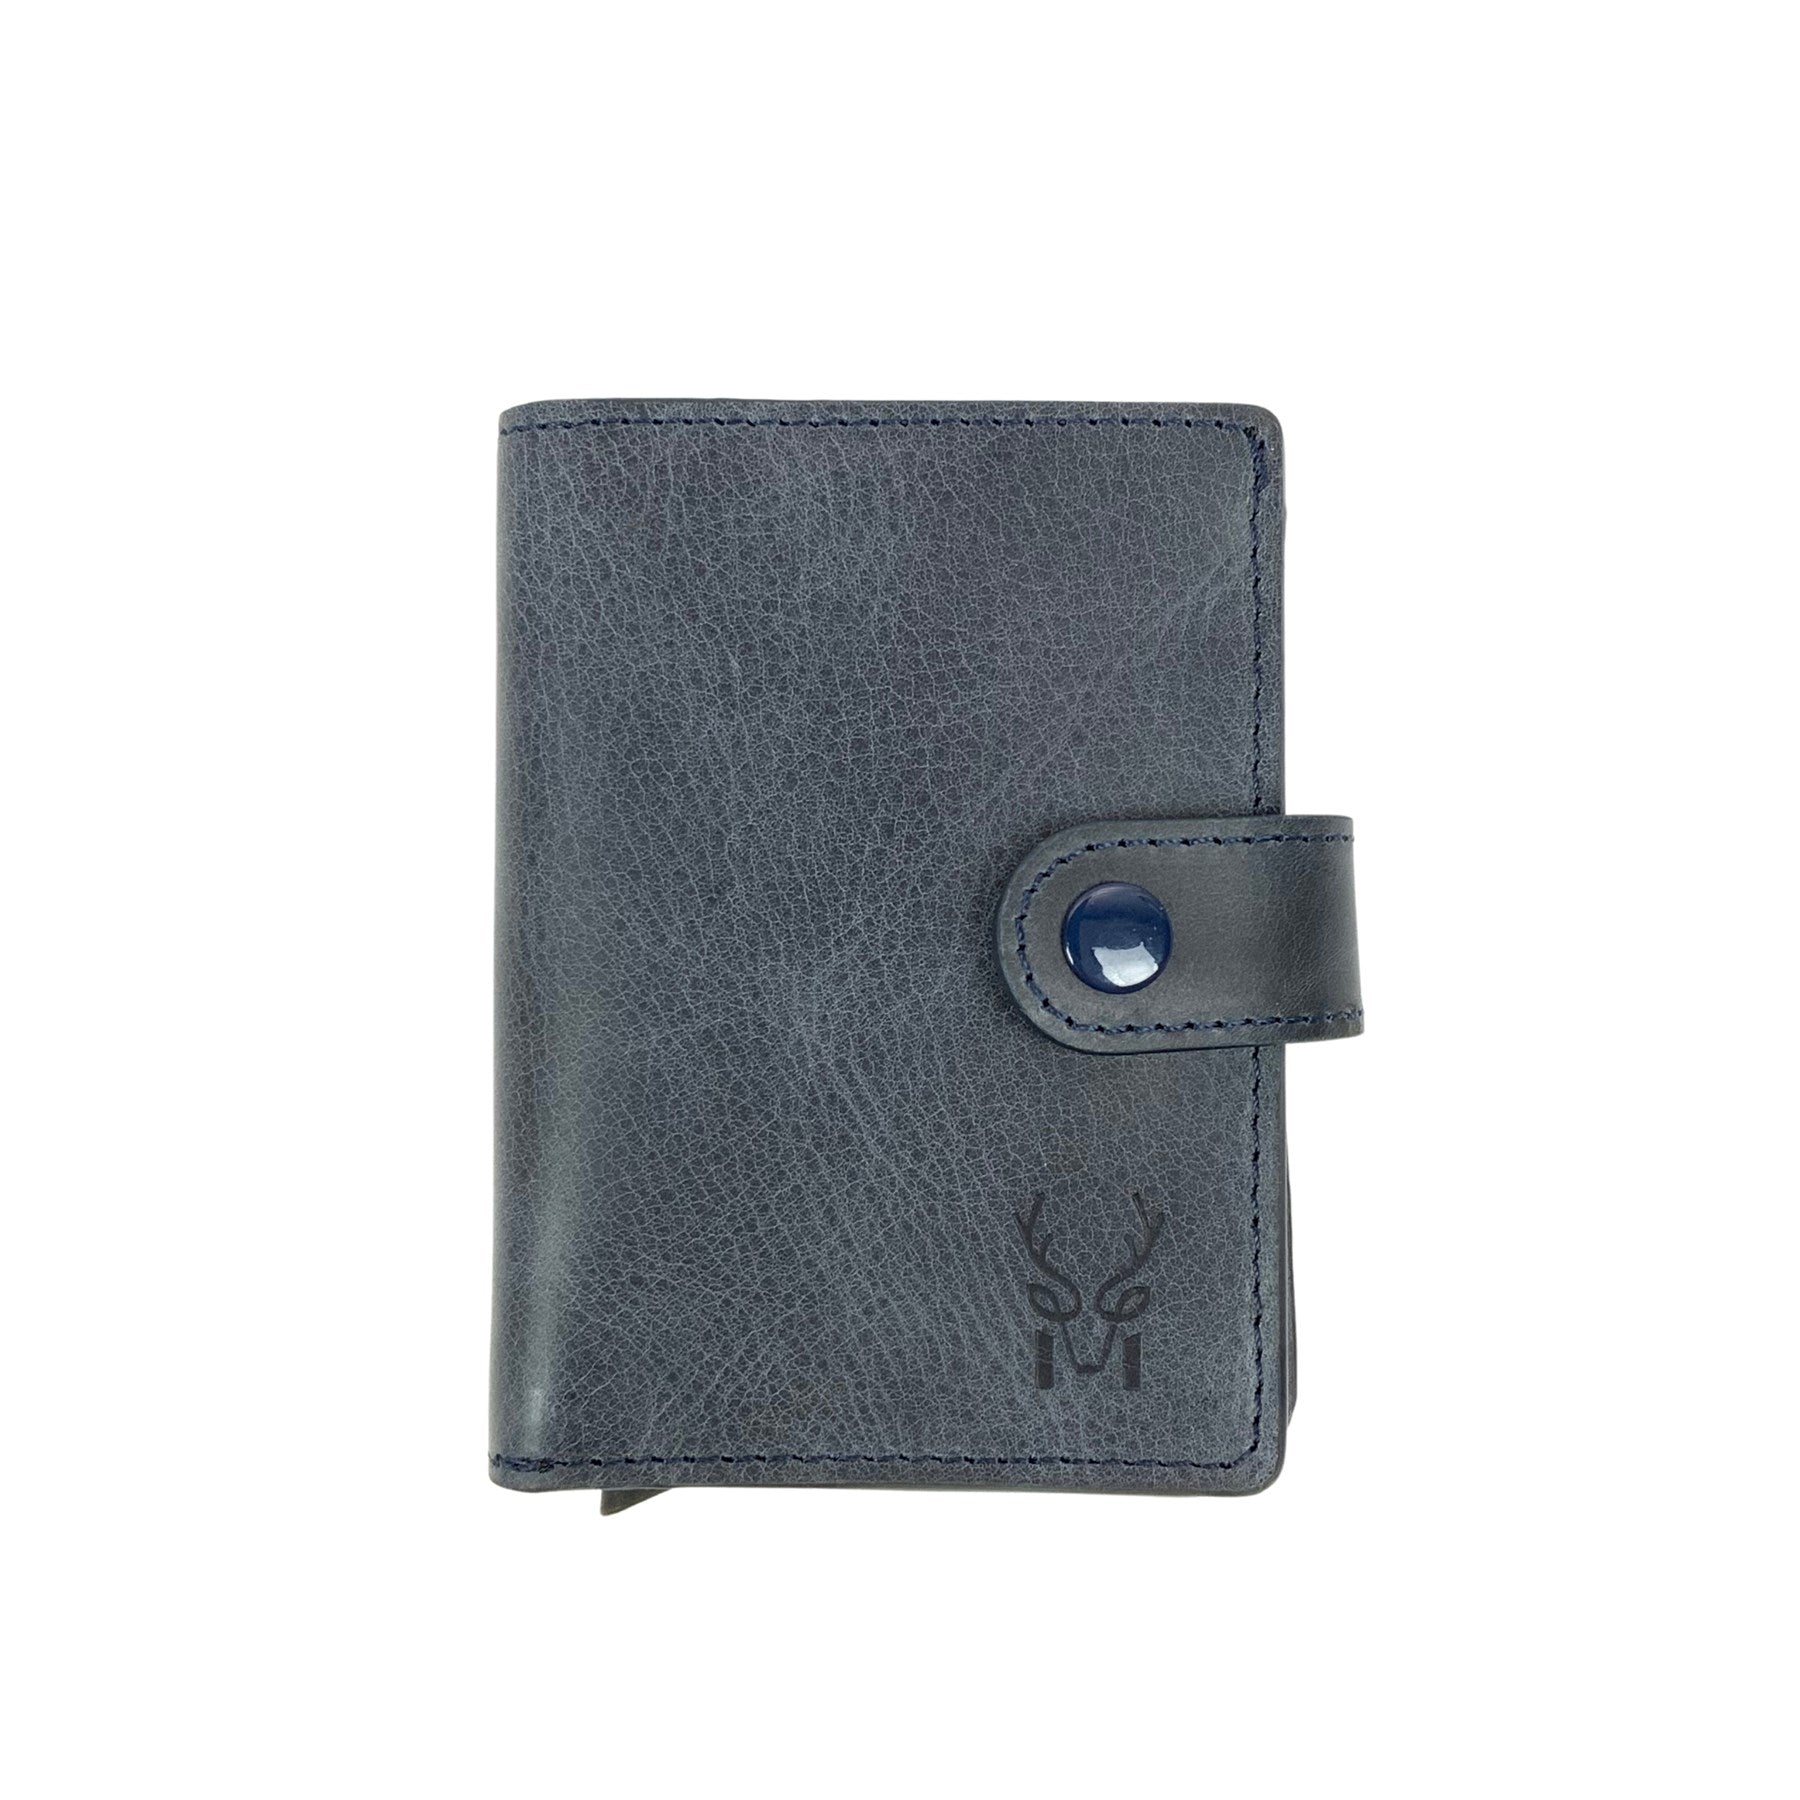 Orlando - Genuine Leather Pop-Up RFID Premium Cardholder